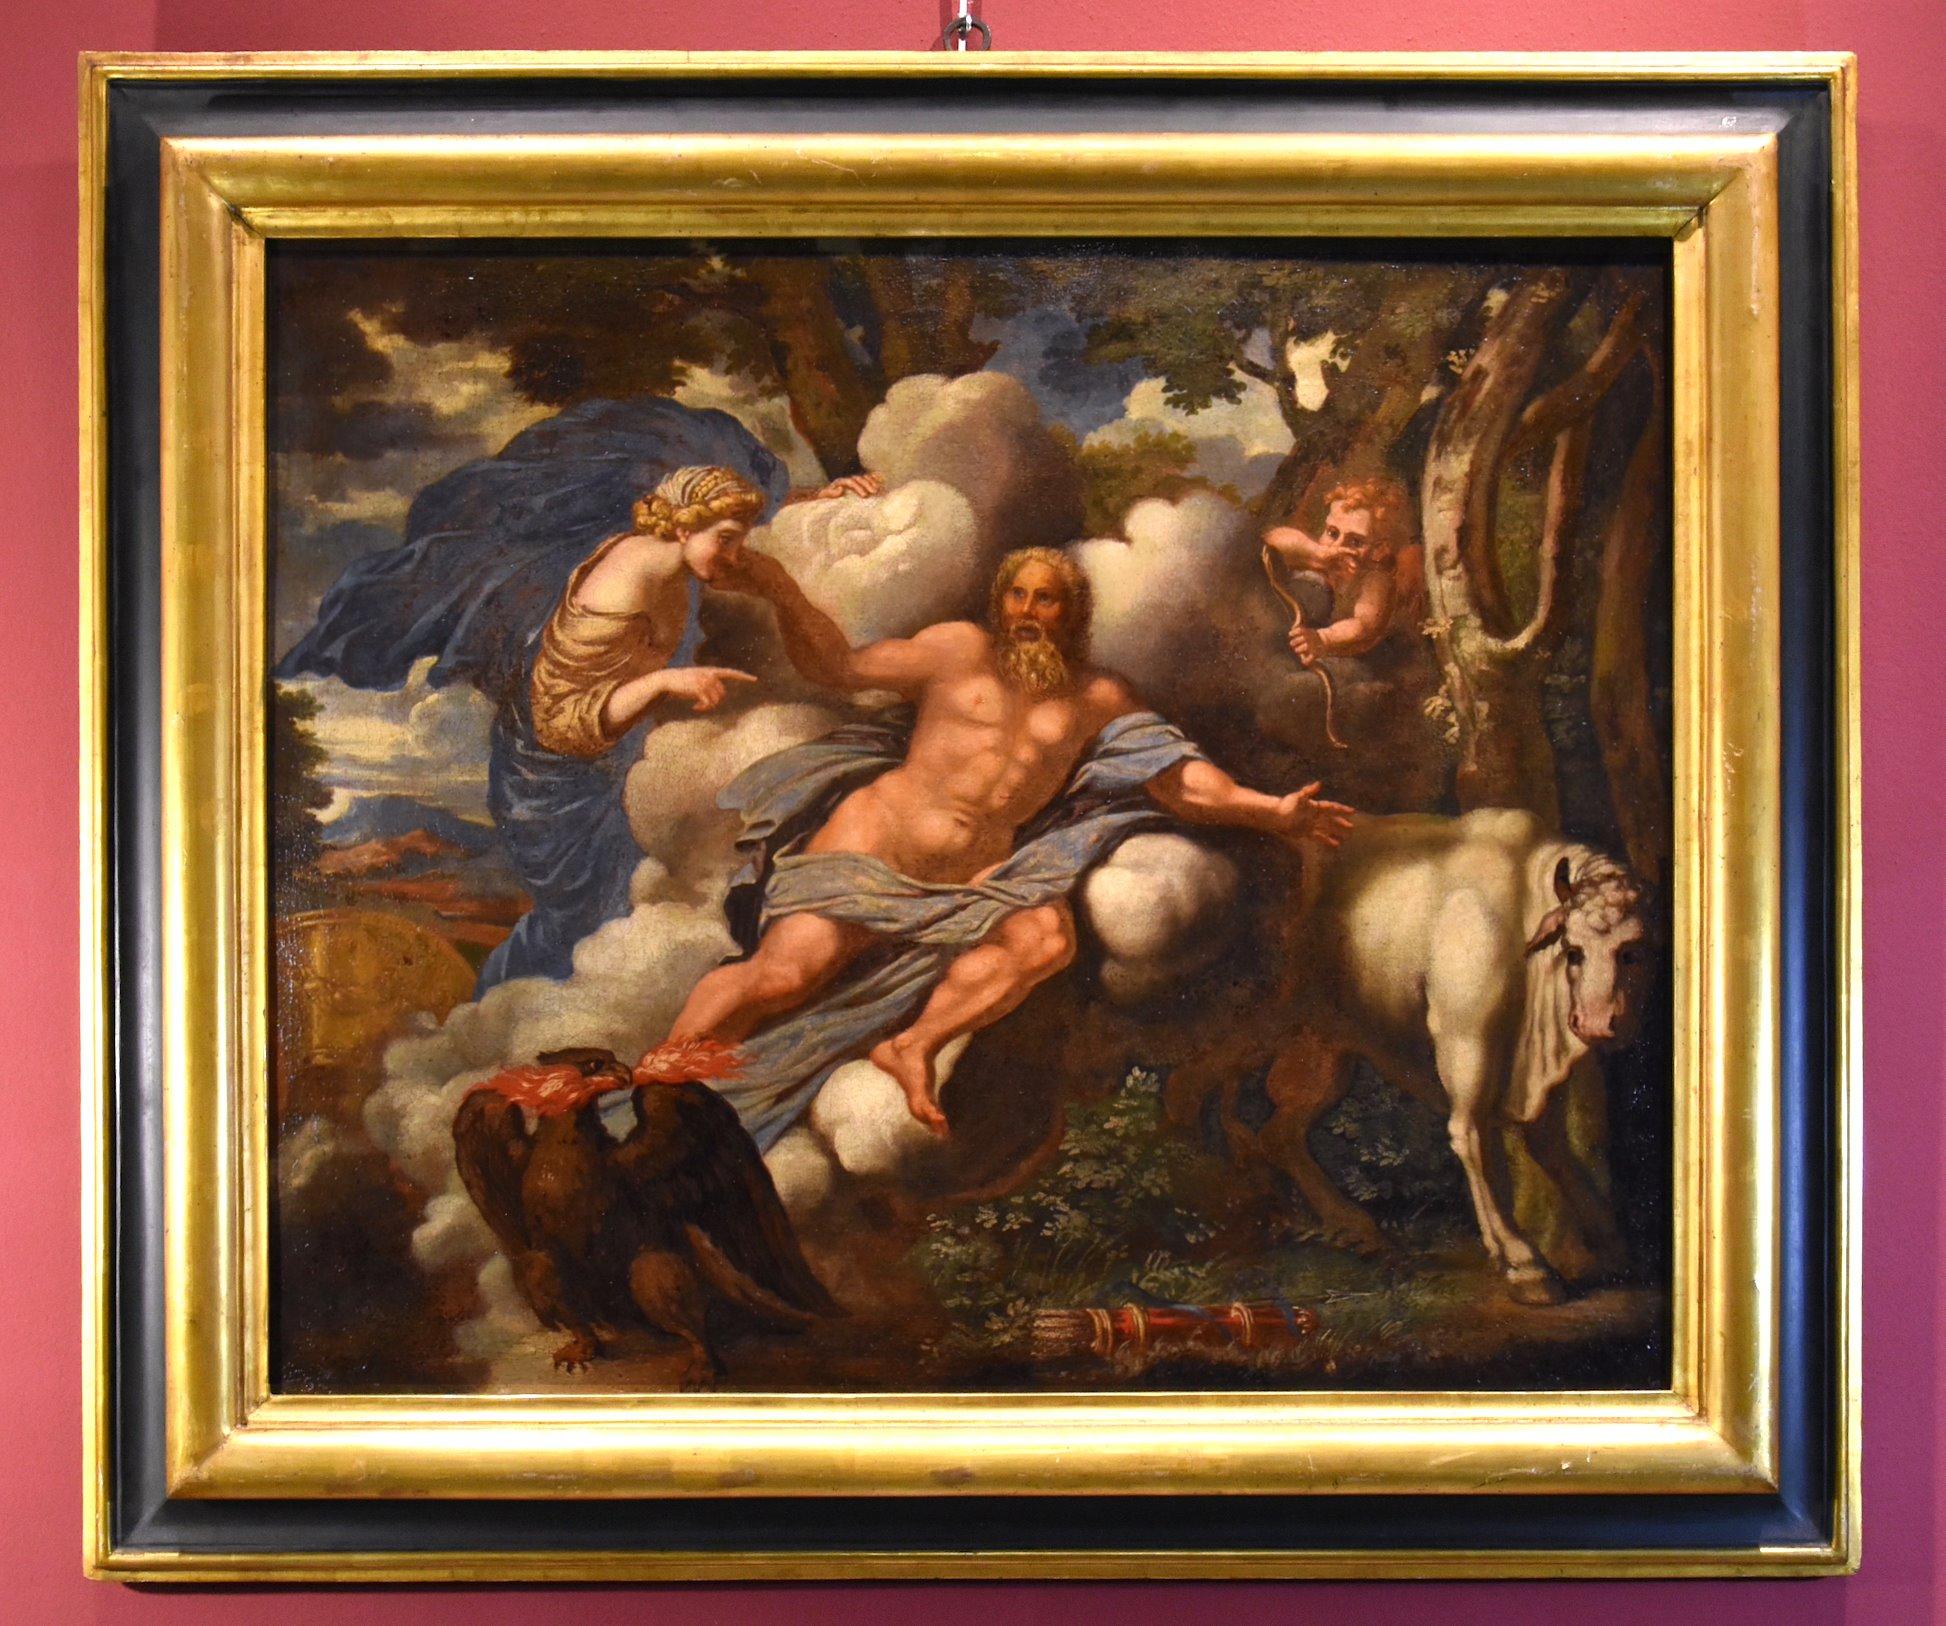 Landscape Painting Unknown - Mythologique Jupiter Canini Peinture Huile sur toile Ancien maître 17ème siècle Italie